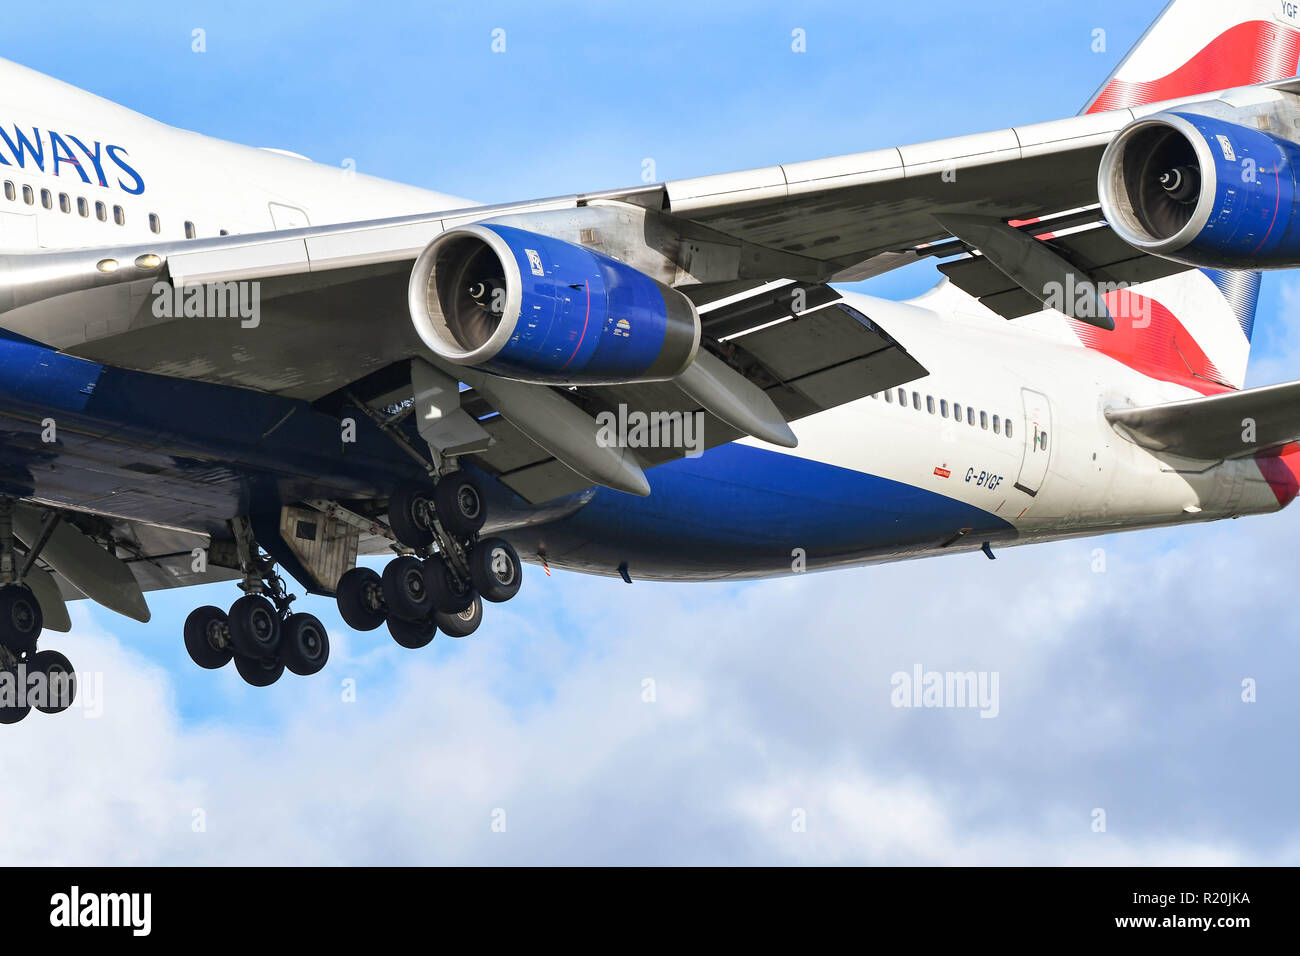 Londres, ANGLETERRE - NOVEMBRE 2018 : des moteurs, roues et les volets d'un Boeing 747 jumbo jet' 'à mesure qu'il arrive à la terre à l'aéroport de Londres Heathrow Banque D'Images